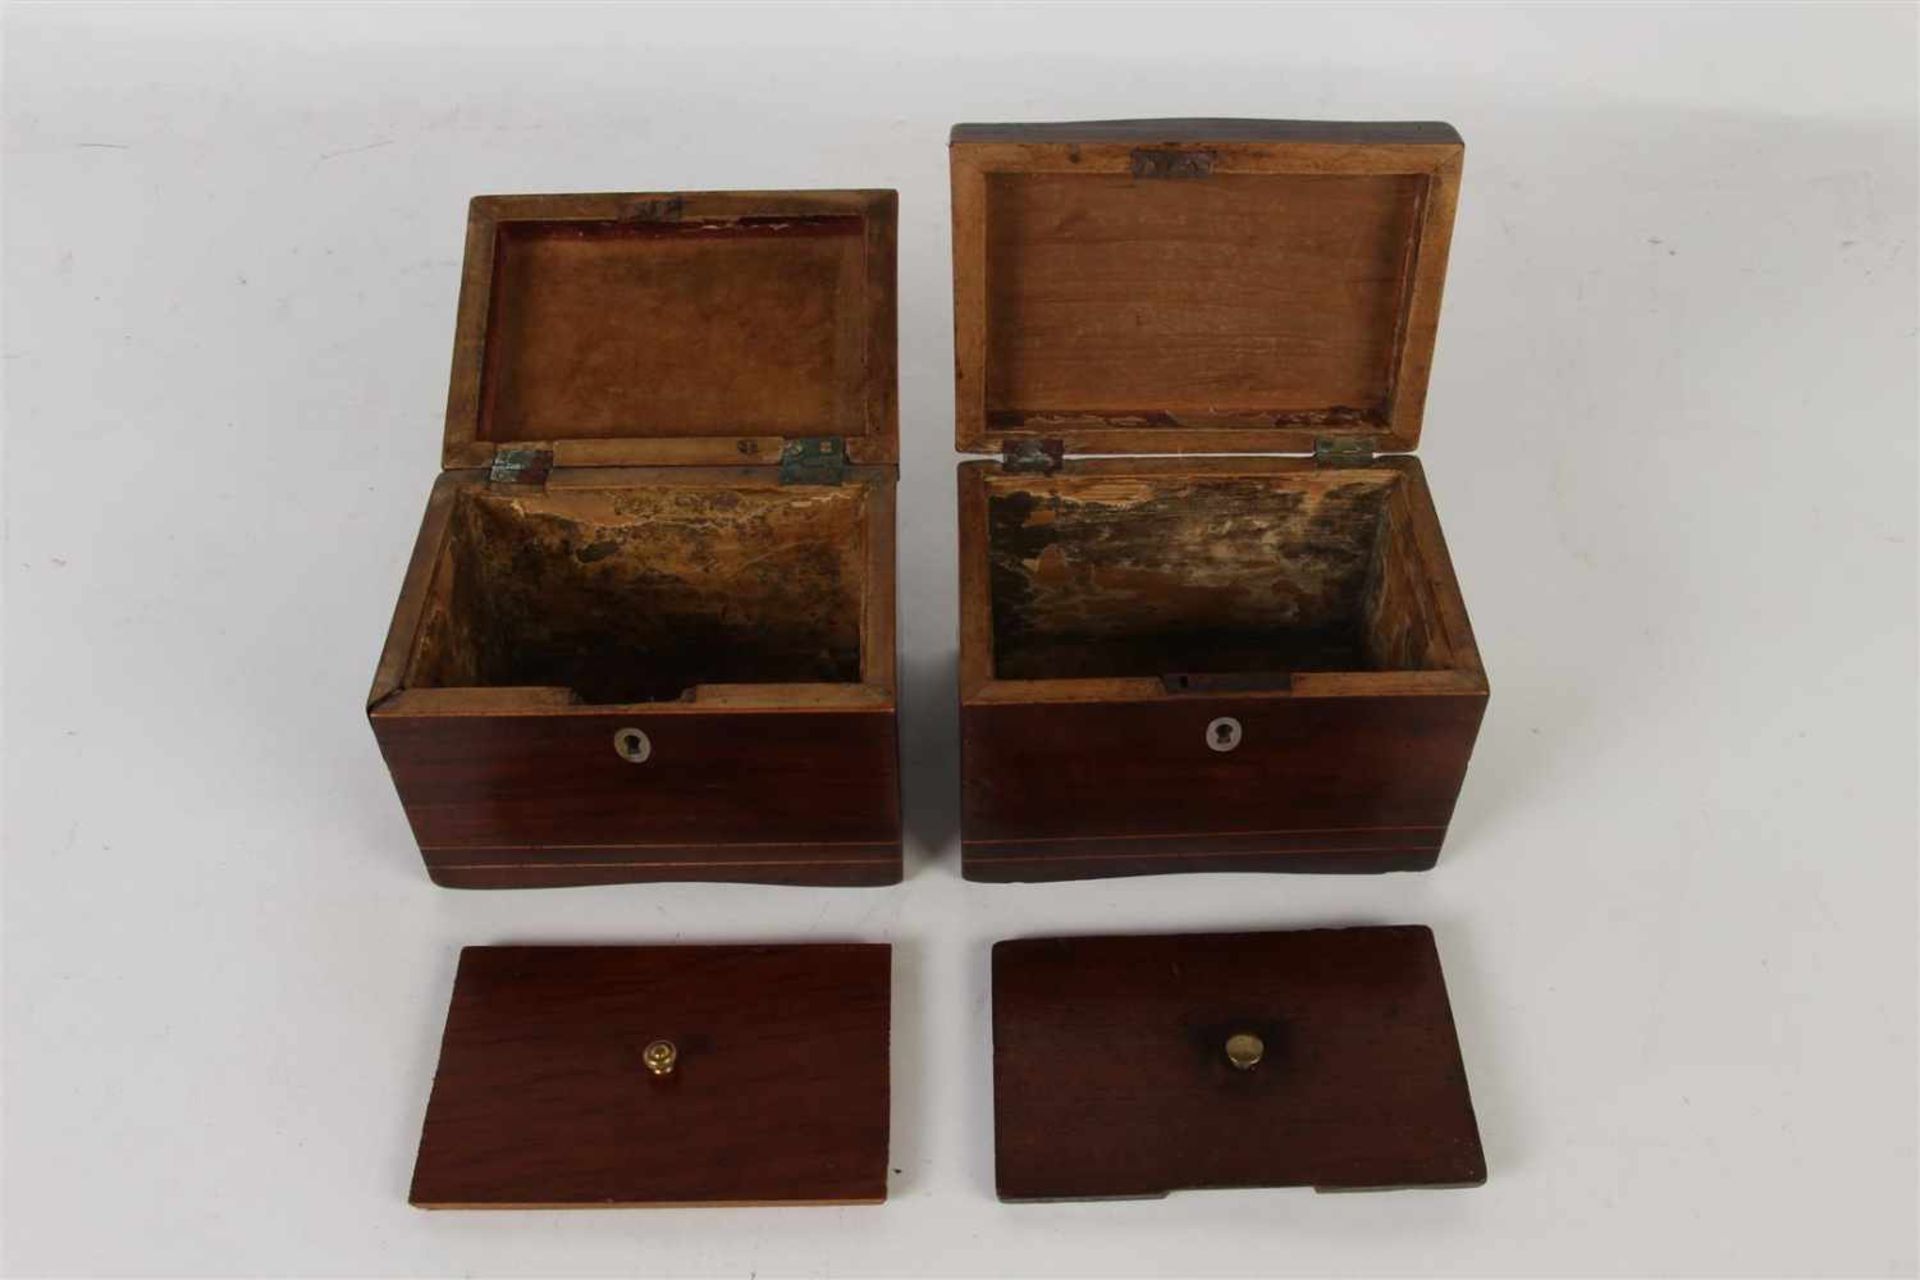 Twee mahoniehouten theekistjes met parelmoer inleg (met defect). Afm: 11 x 15 x 10.8 cm. - Image 3 of 3